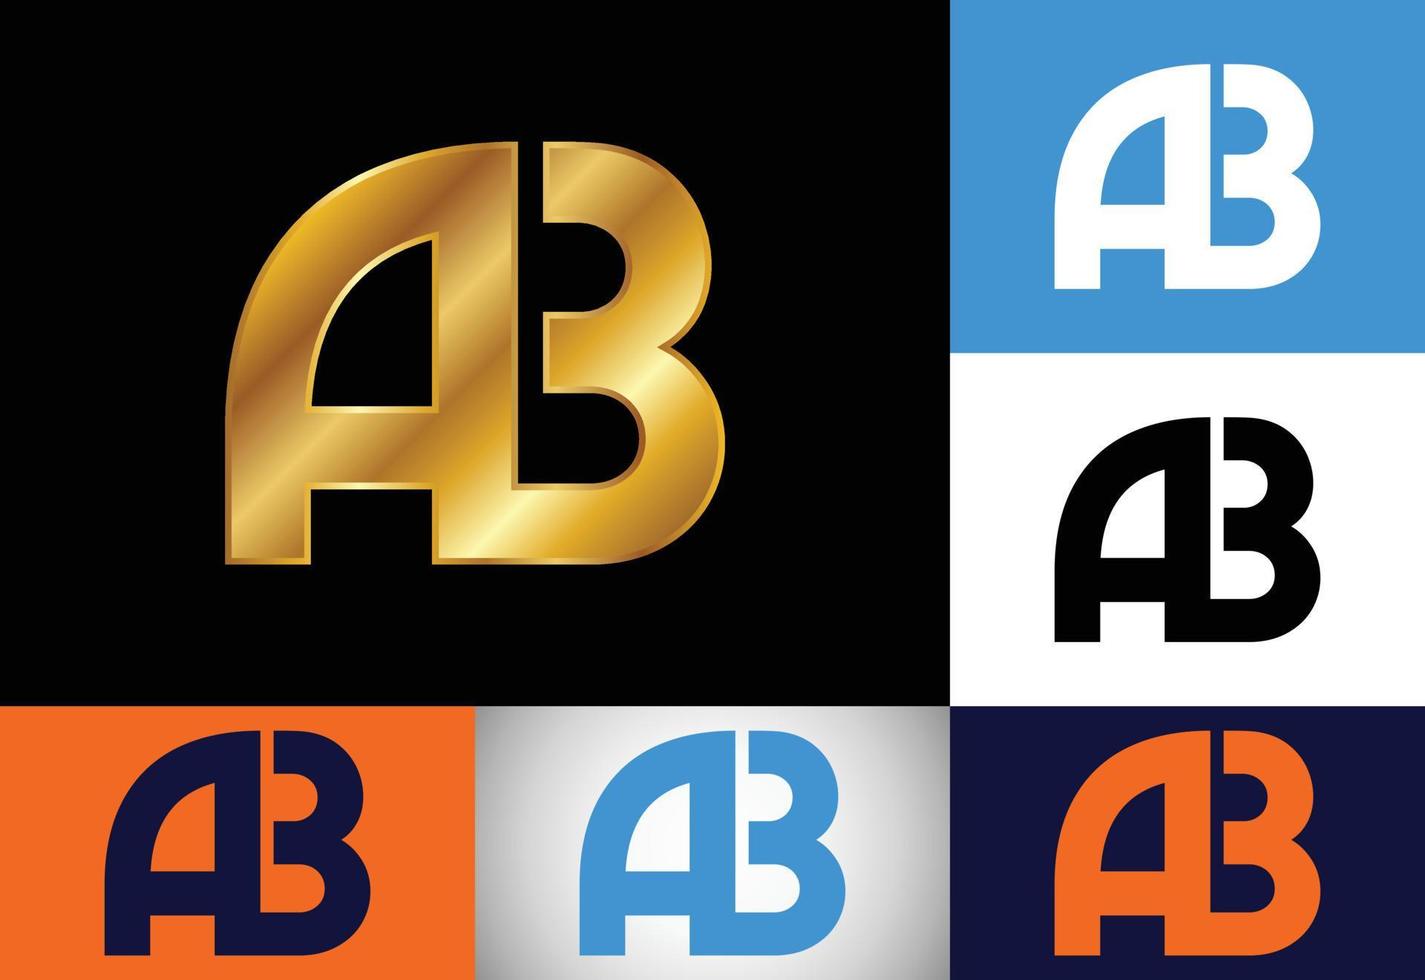 första monogram bokstaven ab logotyp design vektor mall. grafisk alfabetsymbol för företagets företagsidentitet